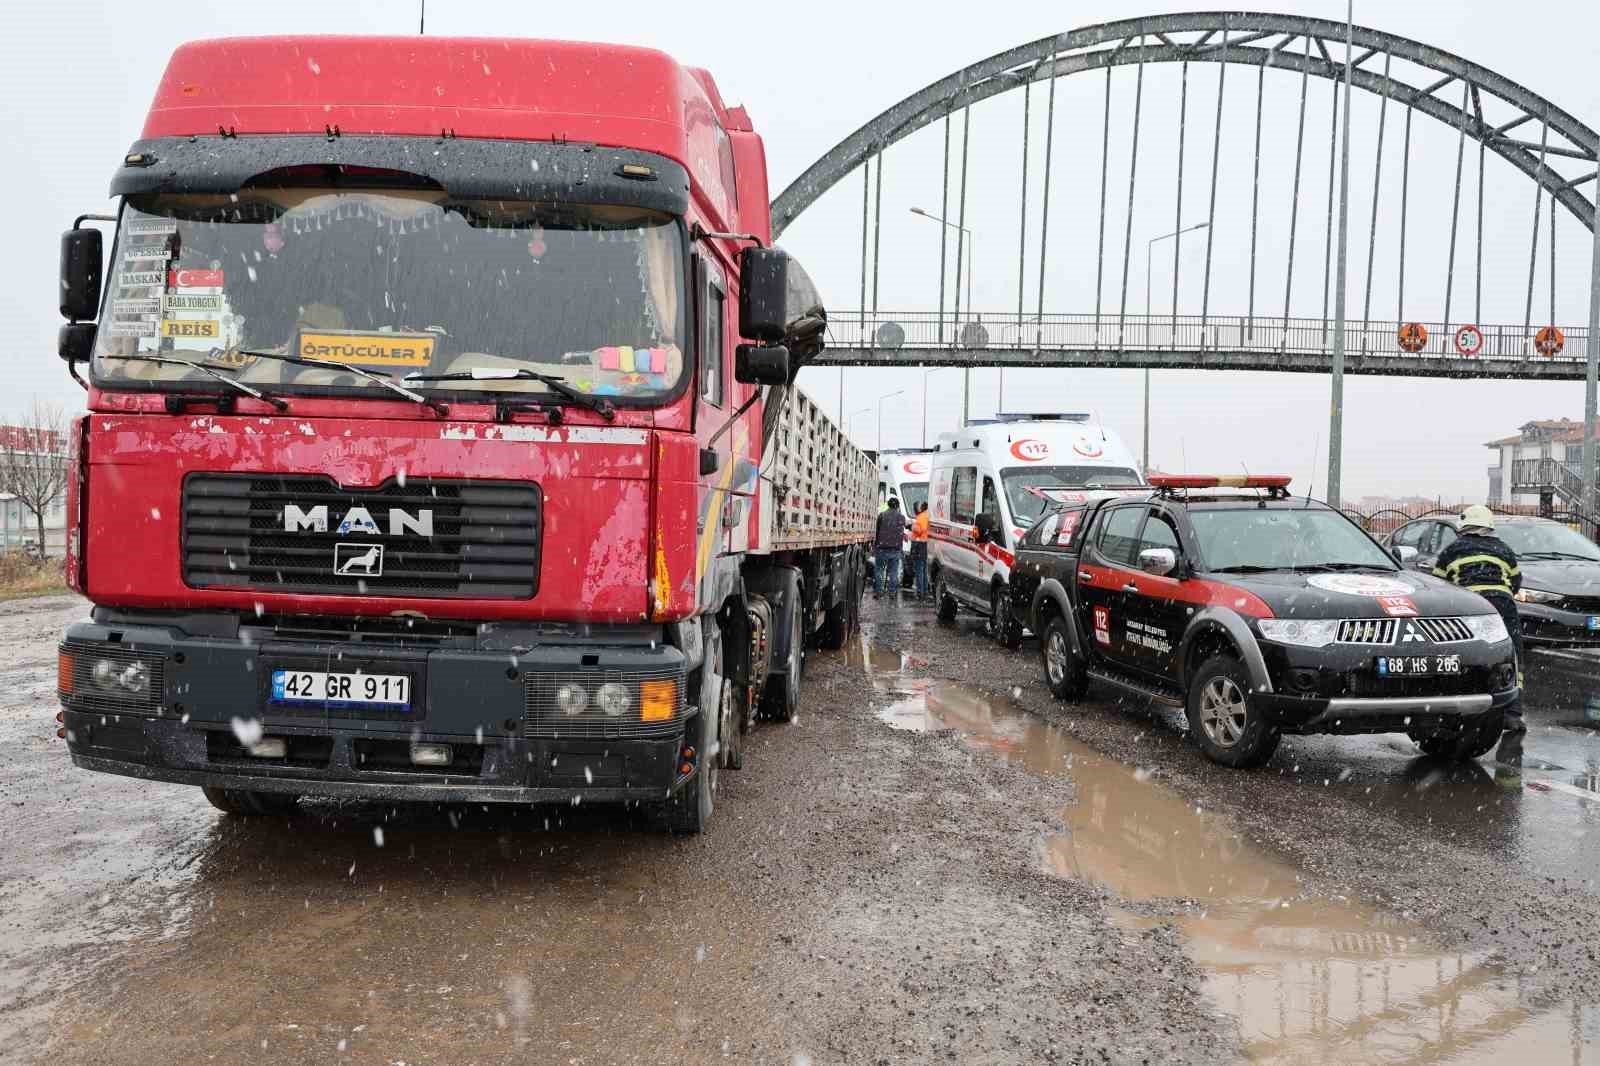 Aksaray’da Taşpınar Belediyesinin kamyoneti tıra arkadan çarptı: 1’i ağır 2 yaralı
